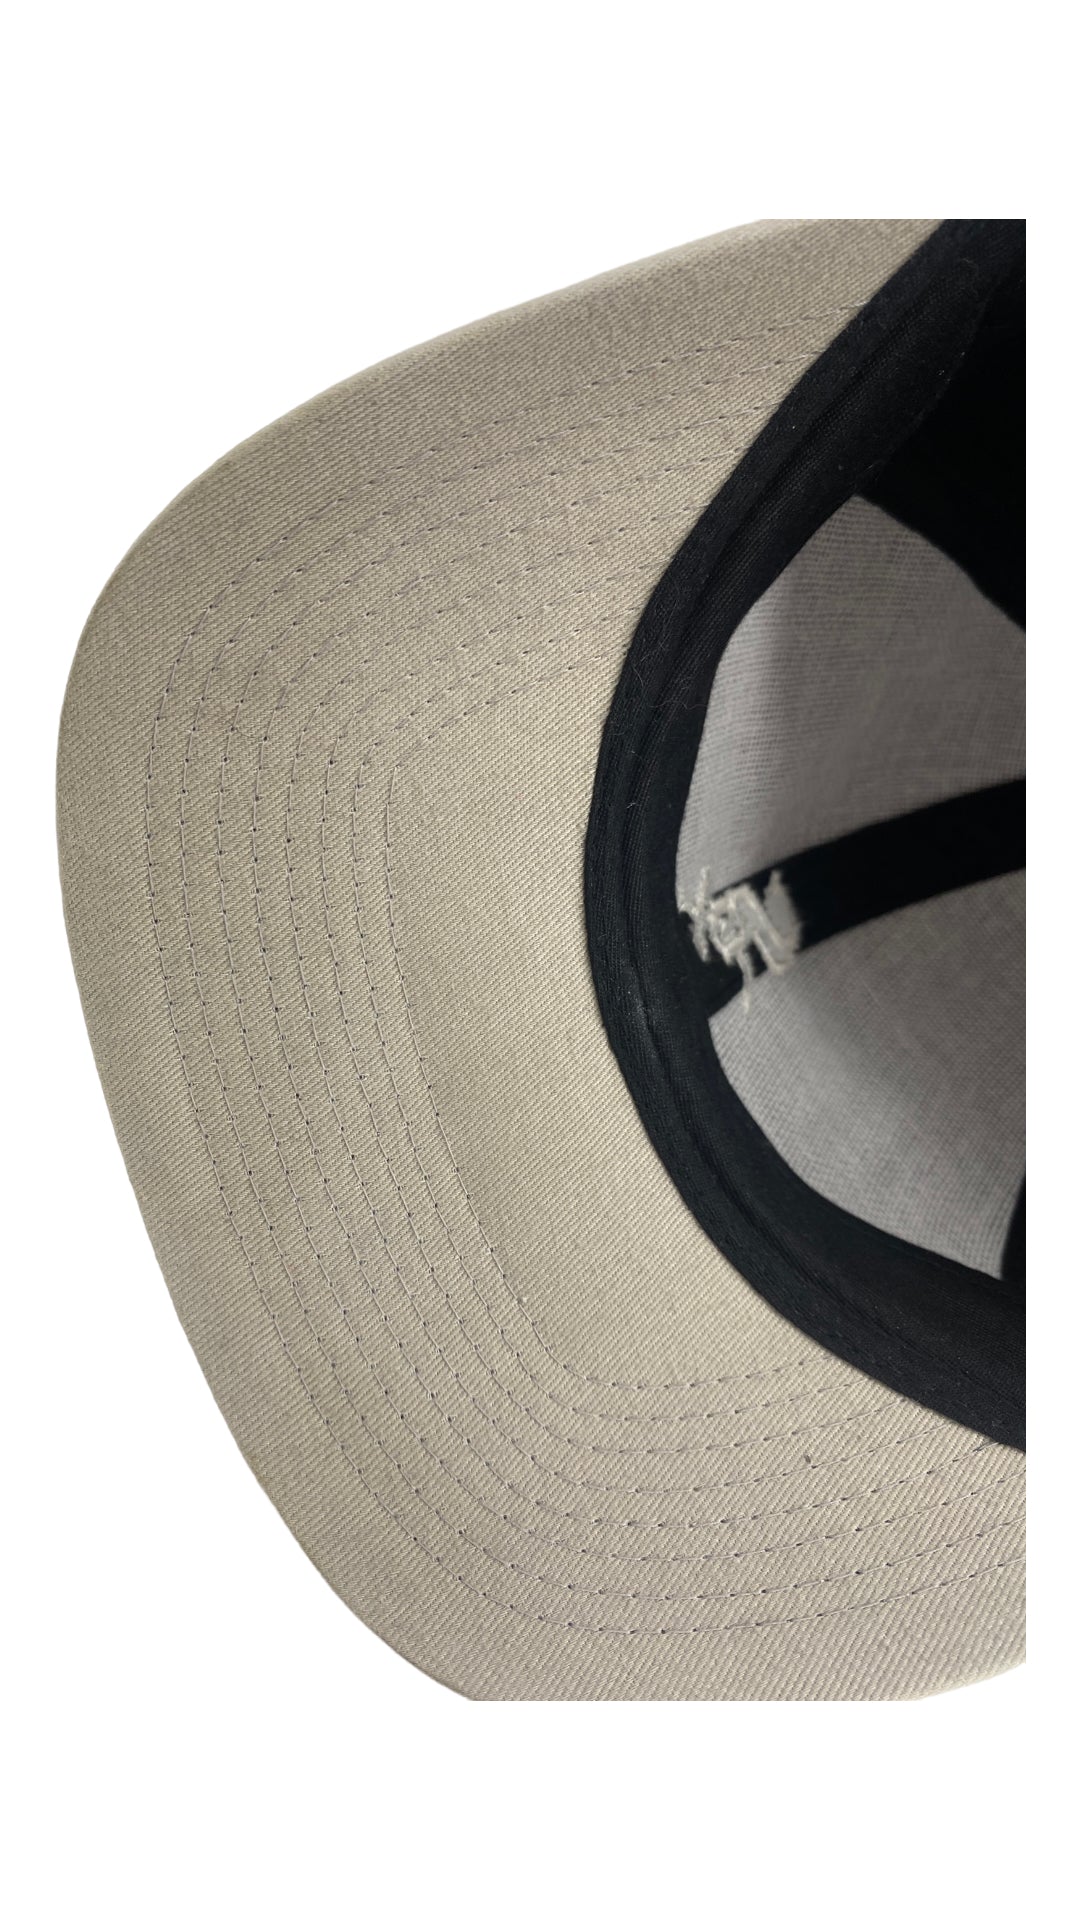 VTG White Sox Strapback Hat